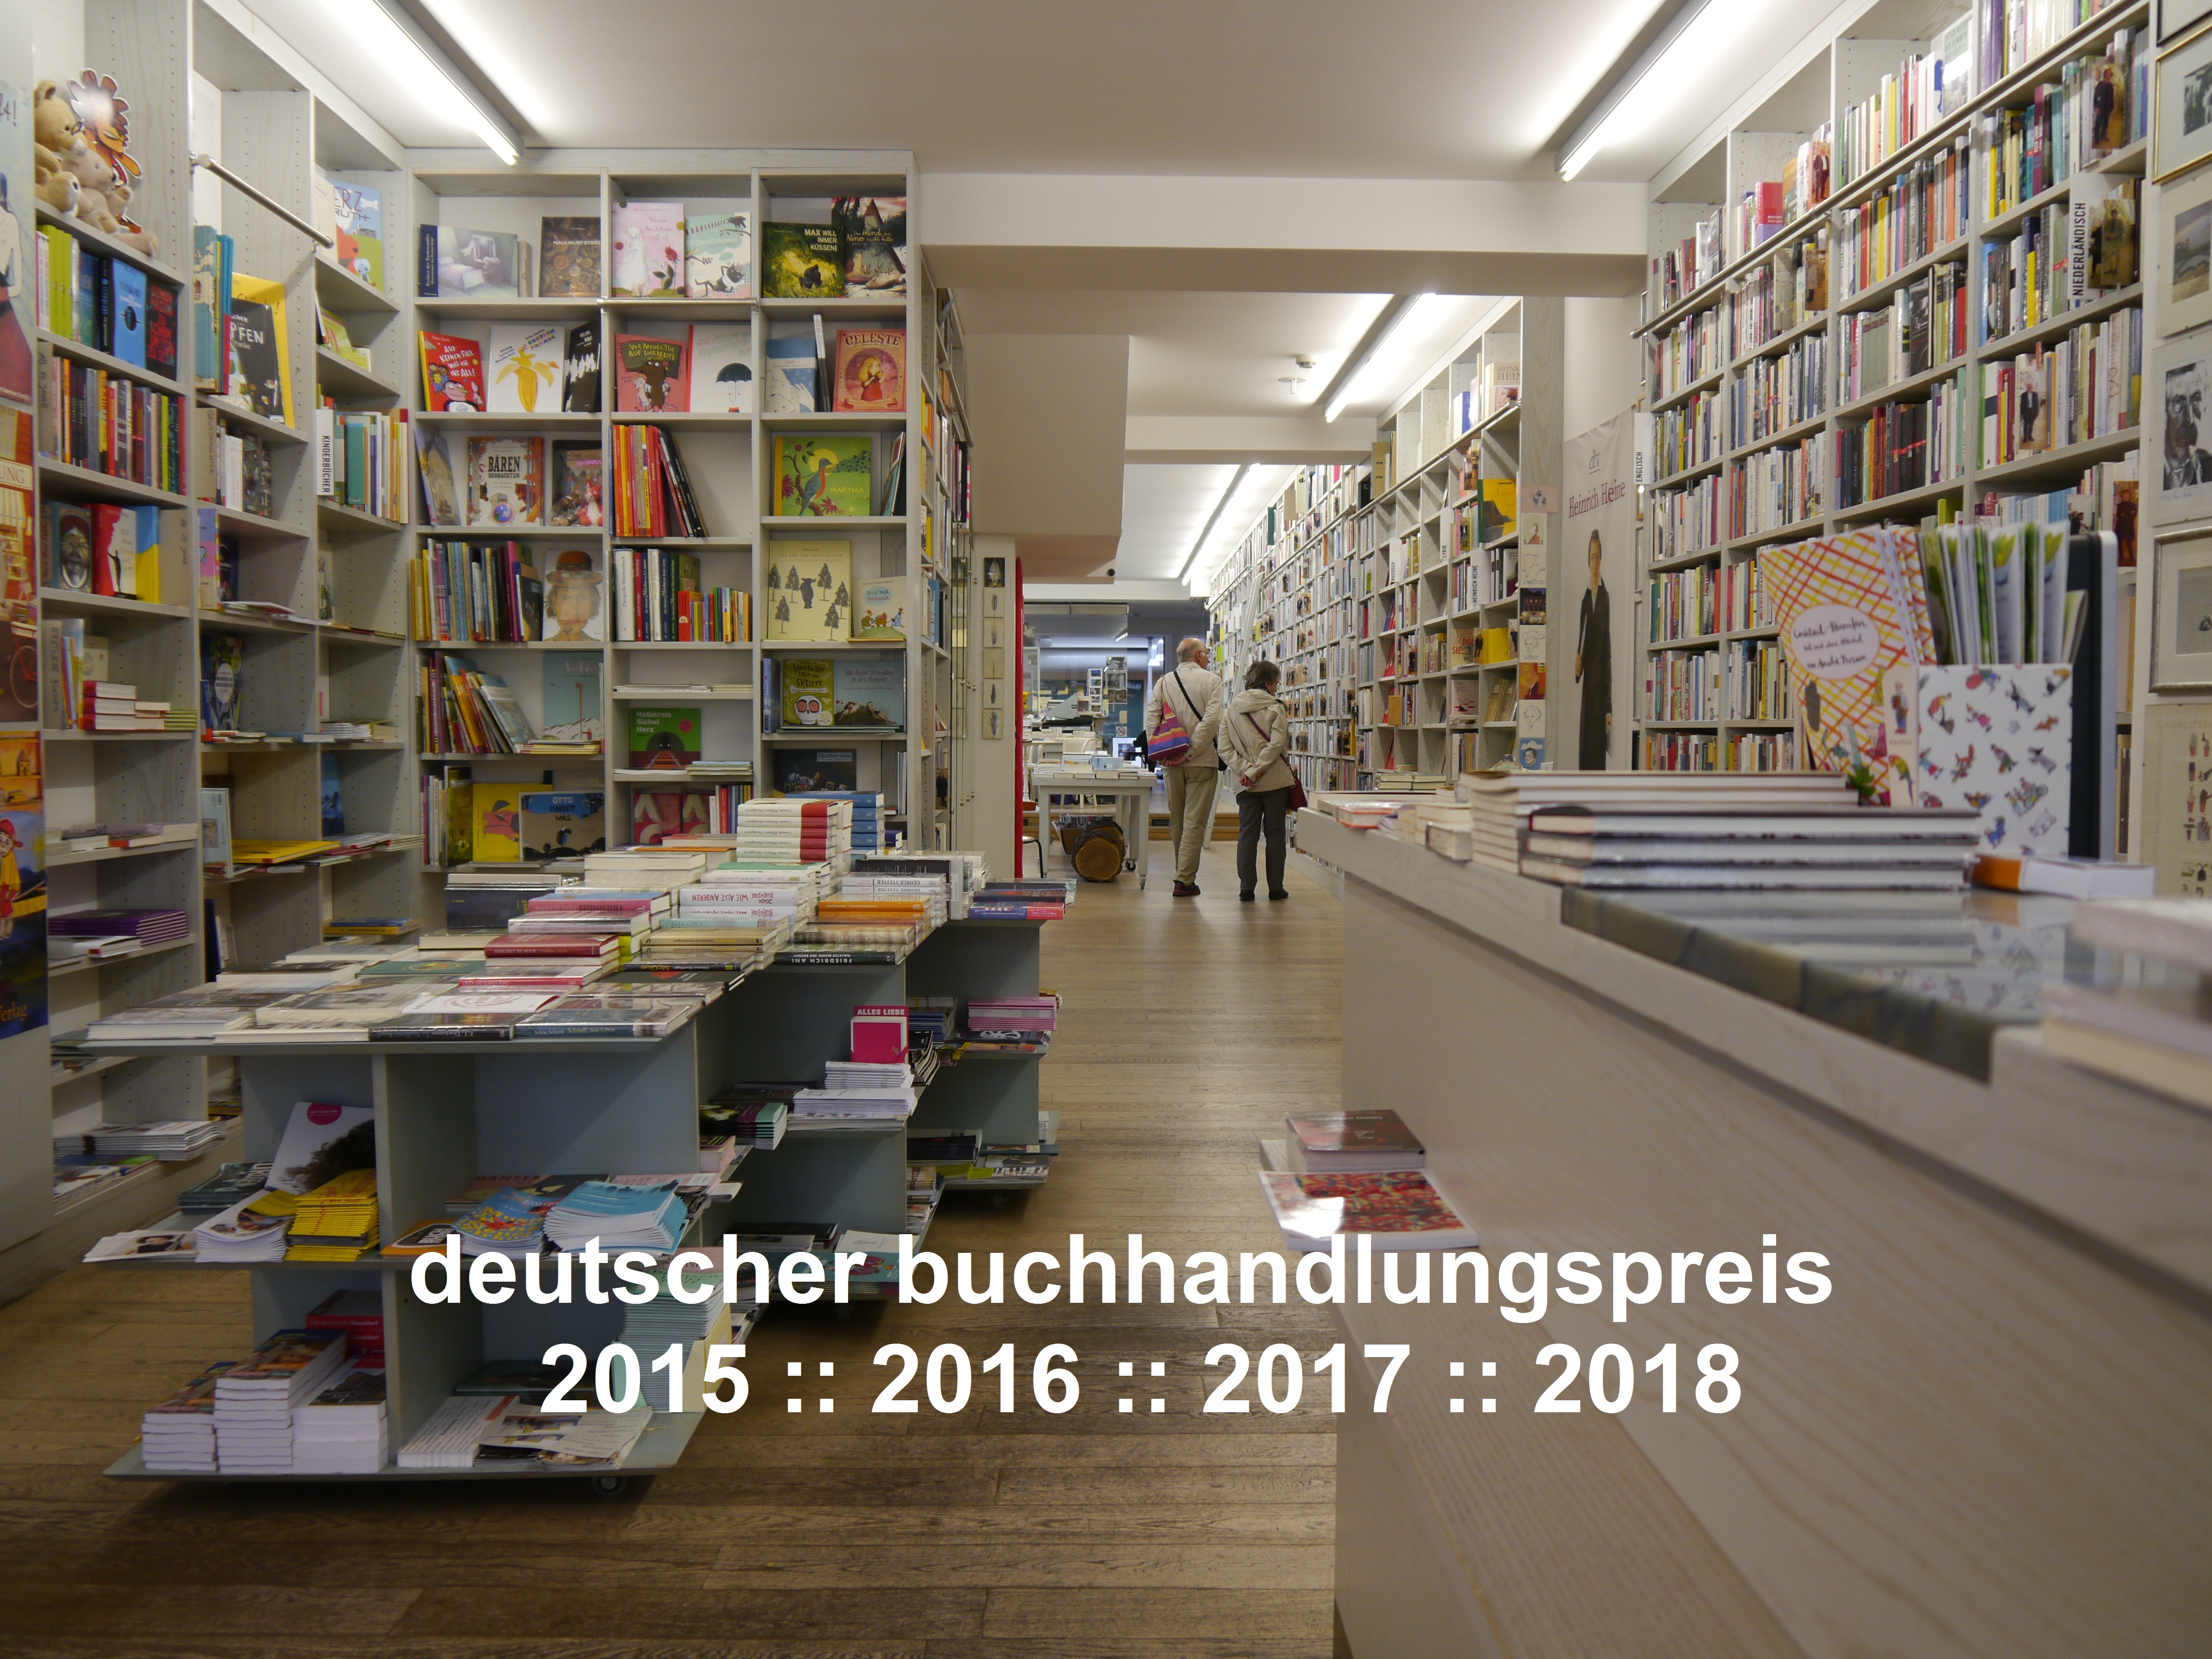 181024 deutscherbuchhandlungspreis